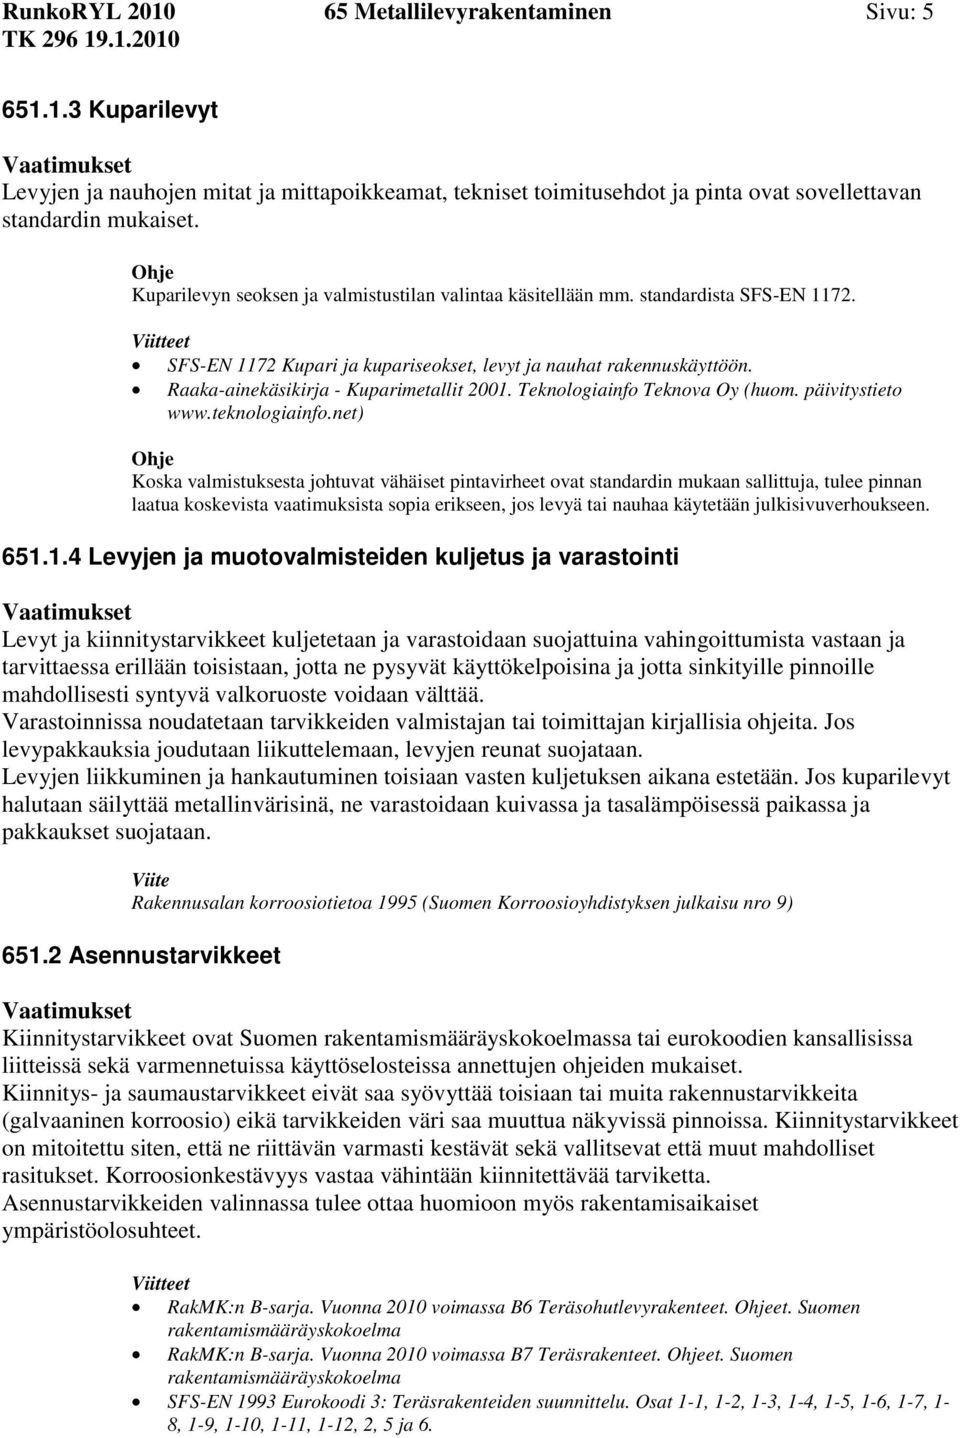 Raaka-ainekäsikirja - Kuparimetallit 2001. Teknologiainfo Teknova Oy (huom. päivitystieto www.teknologiainfo.